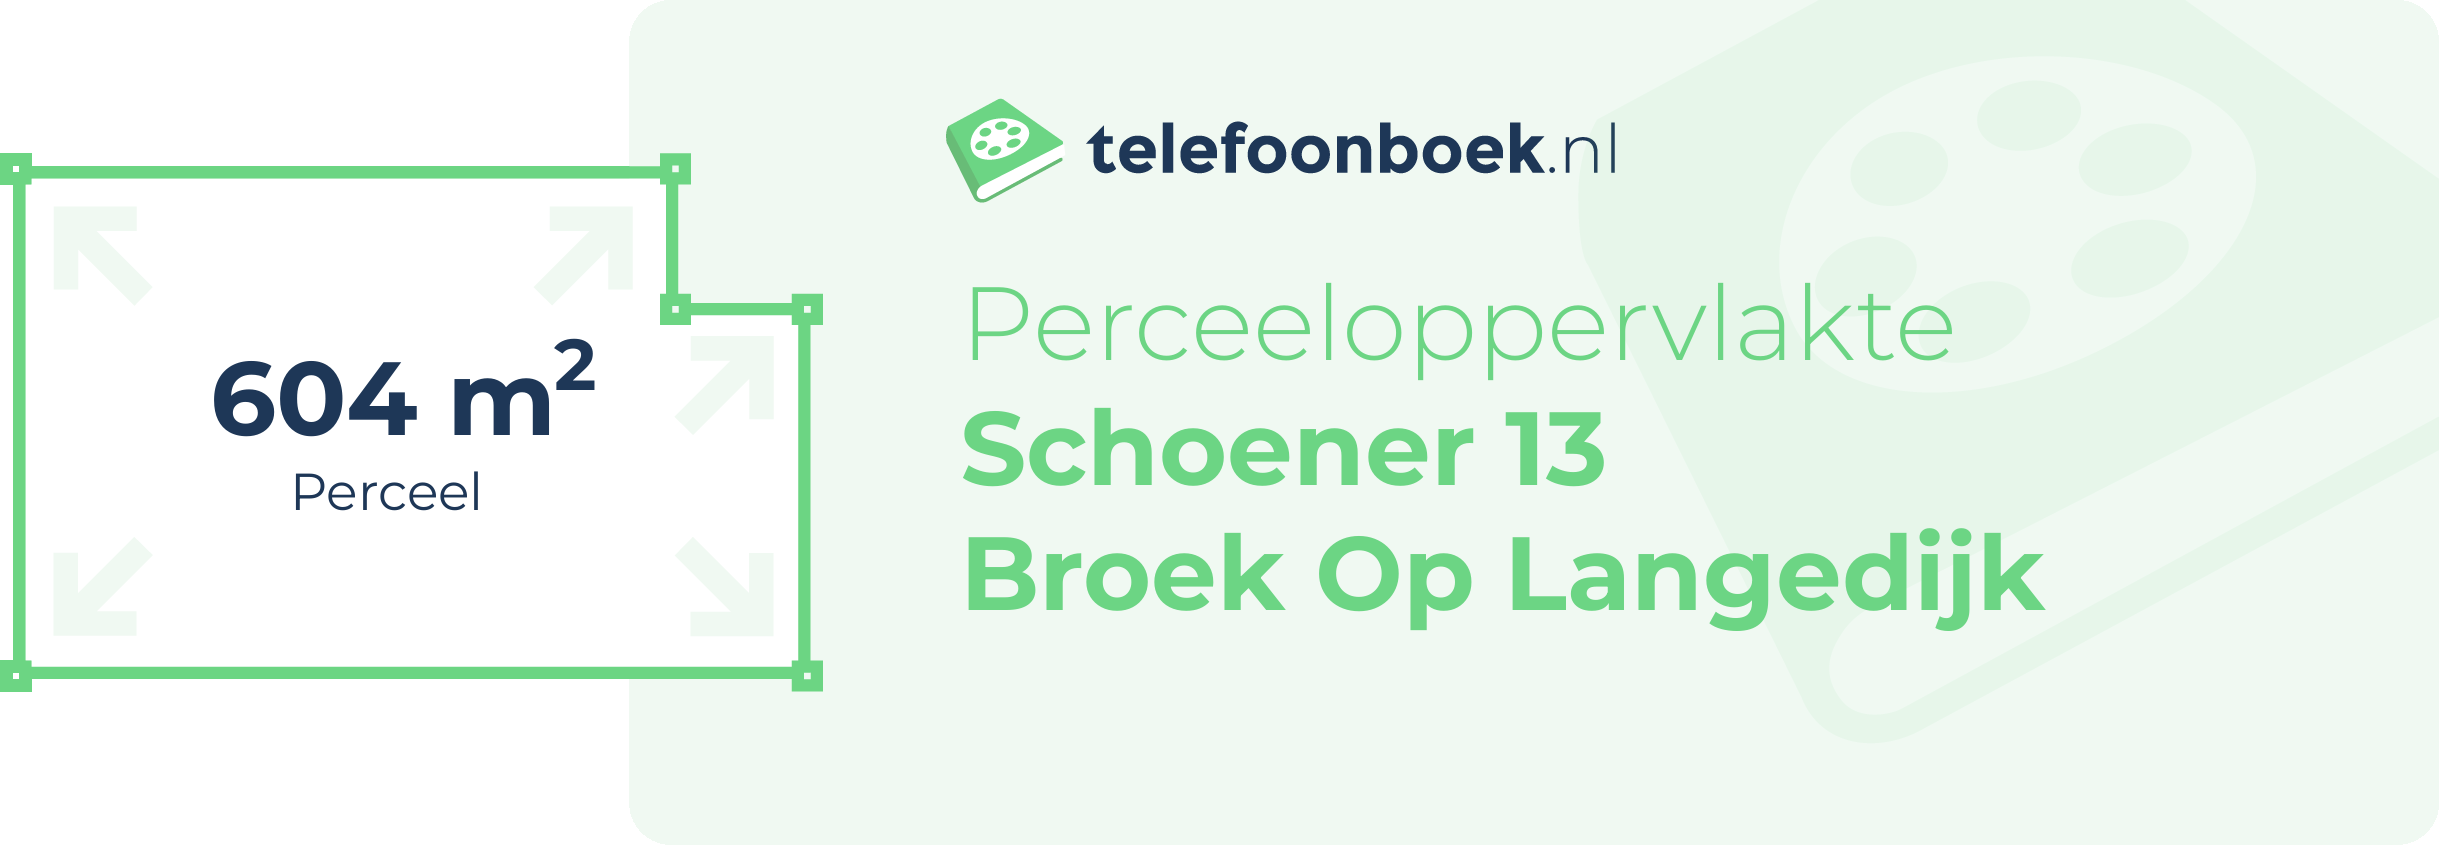 Perceeloppervlakte Schoener 13 Broek Op Langedijk